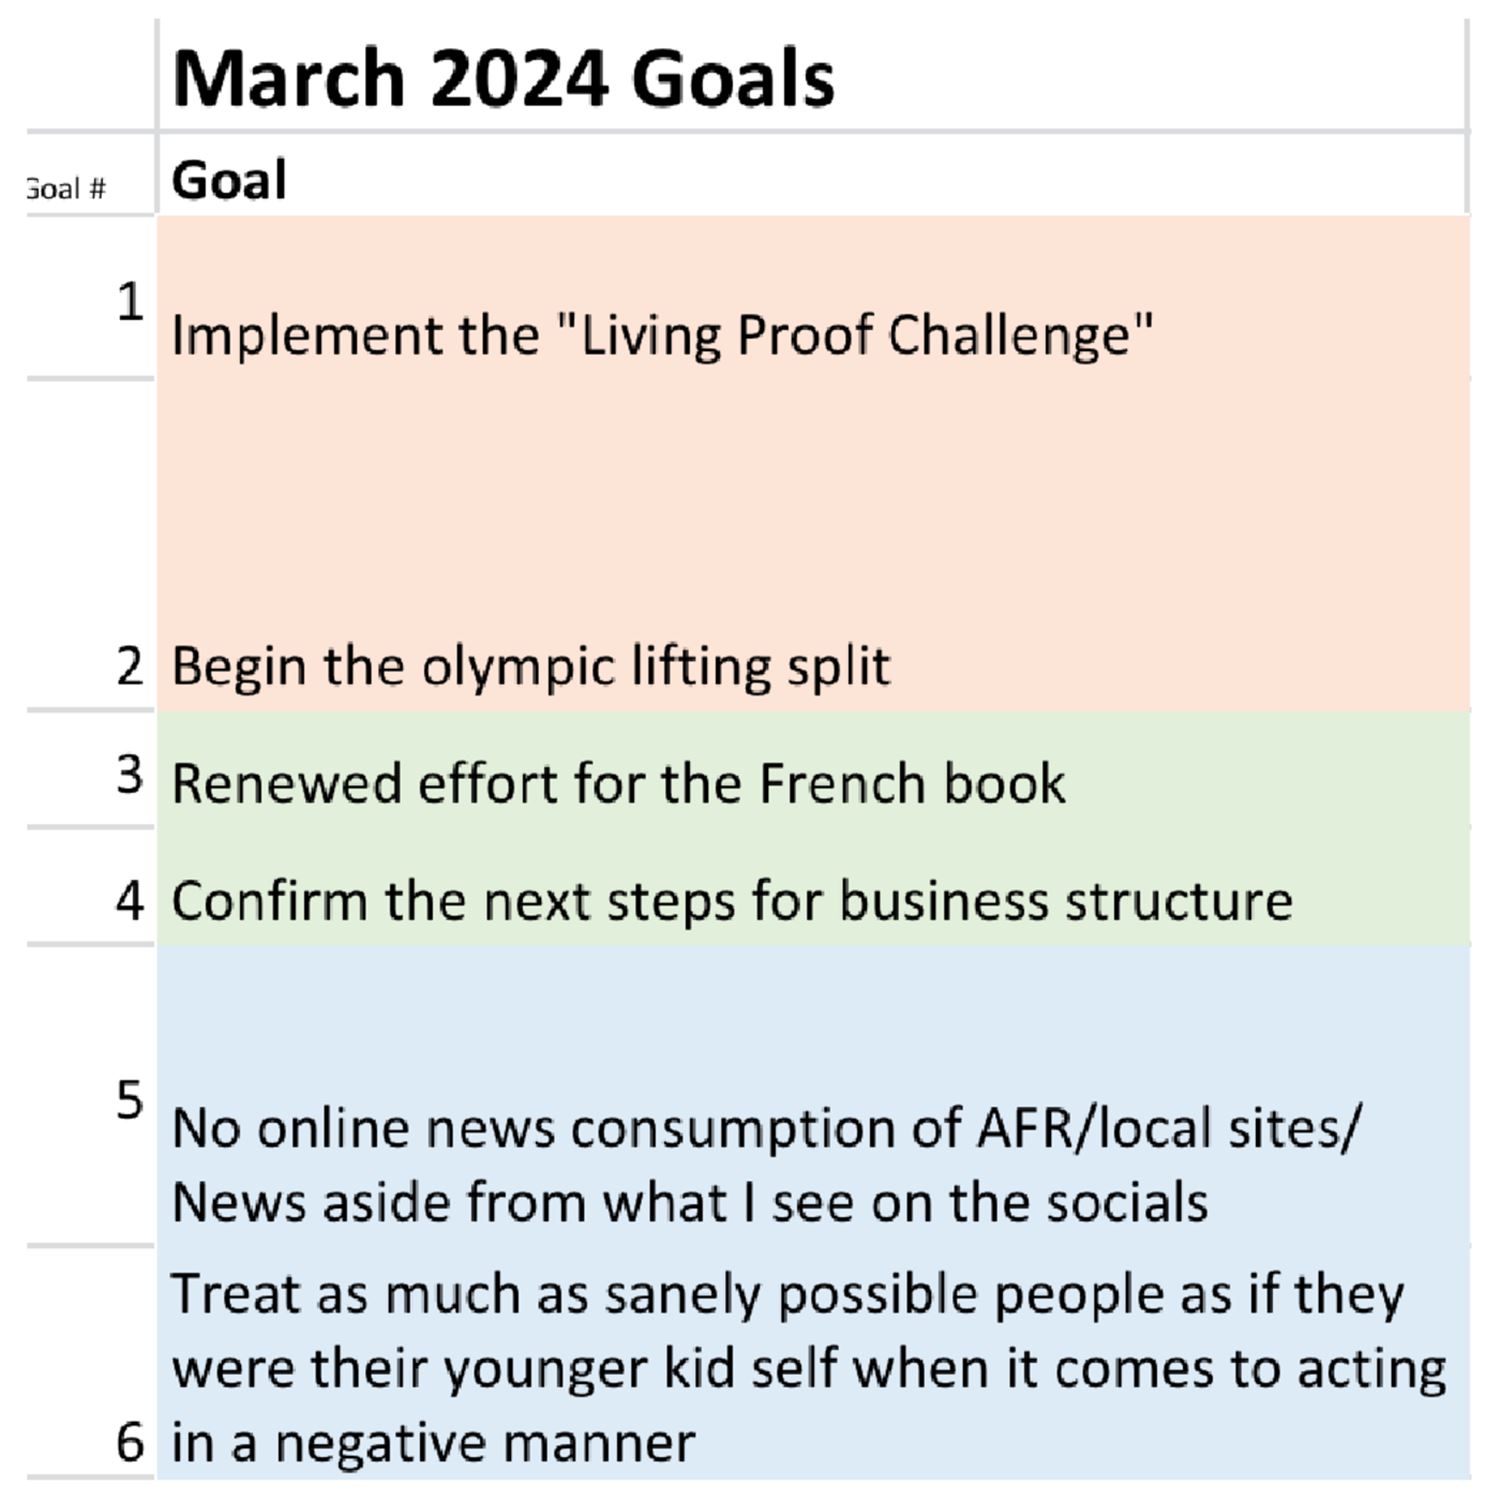 Juan's March 2024 Goals